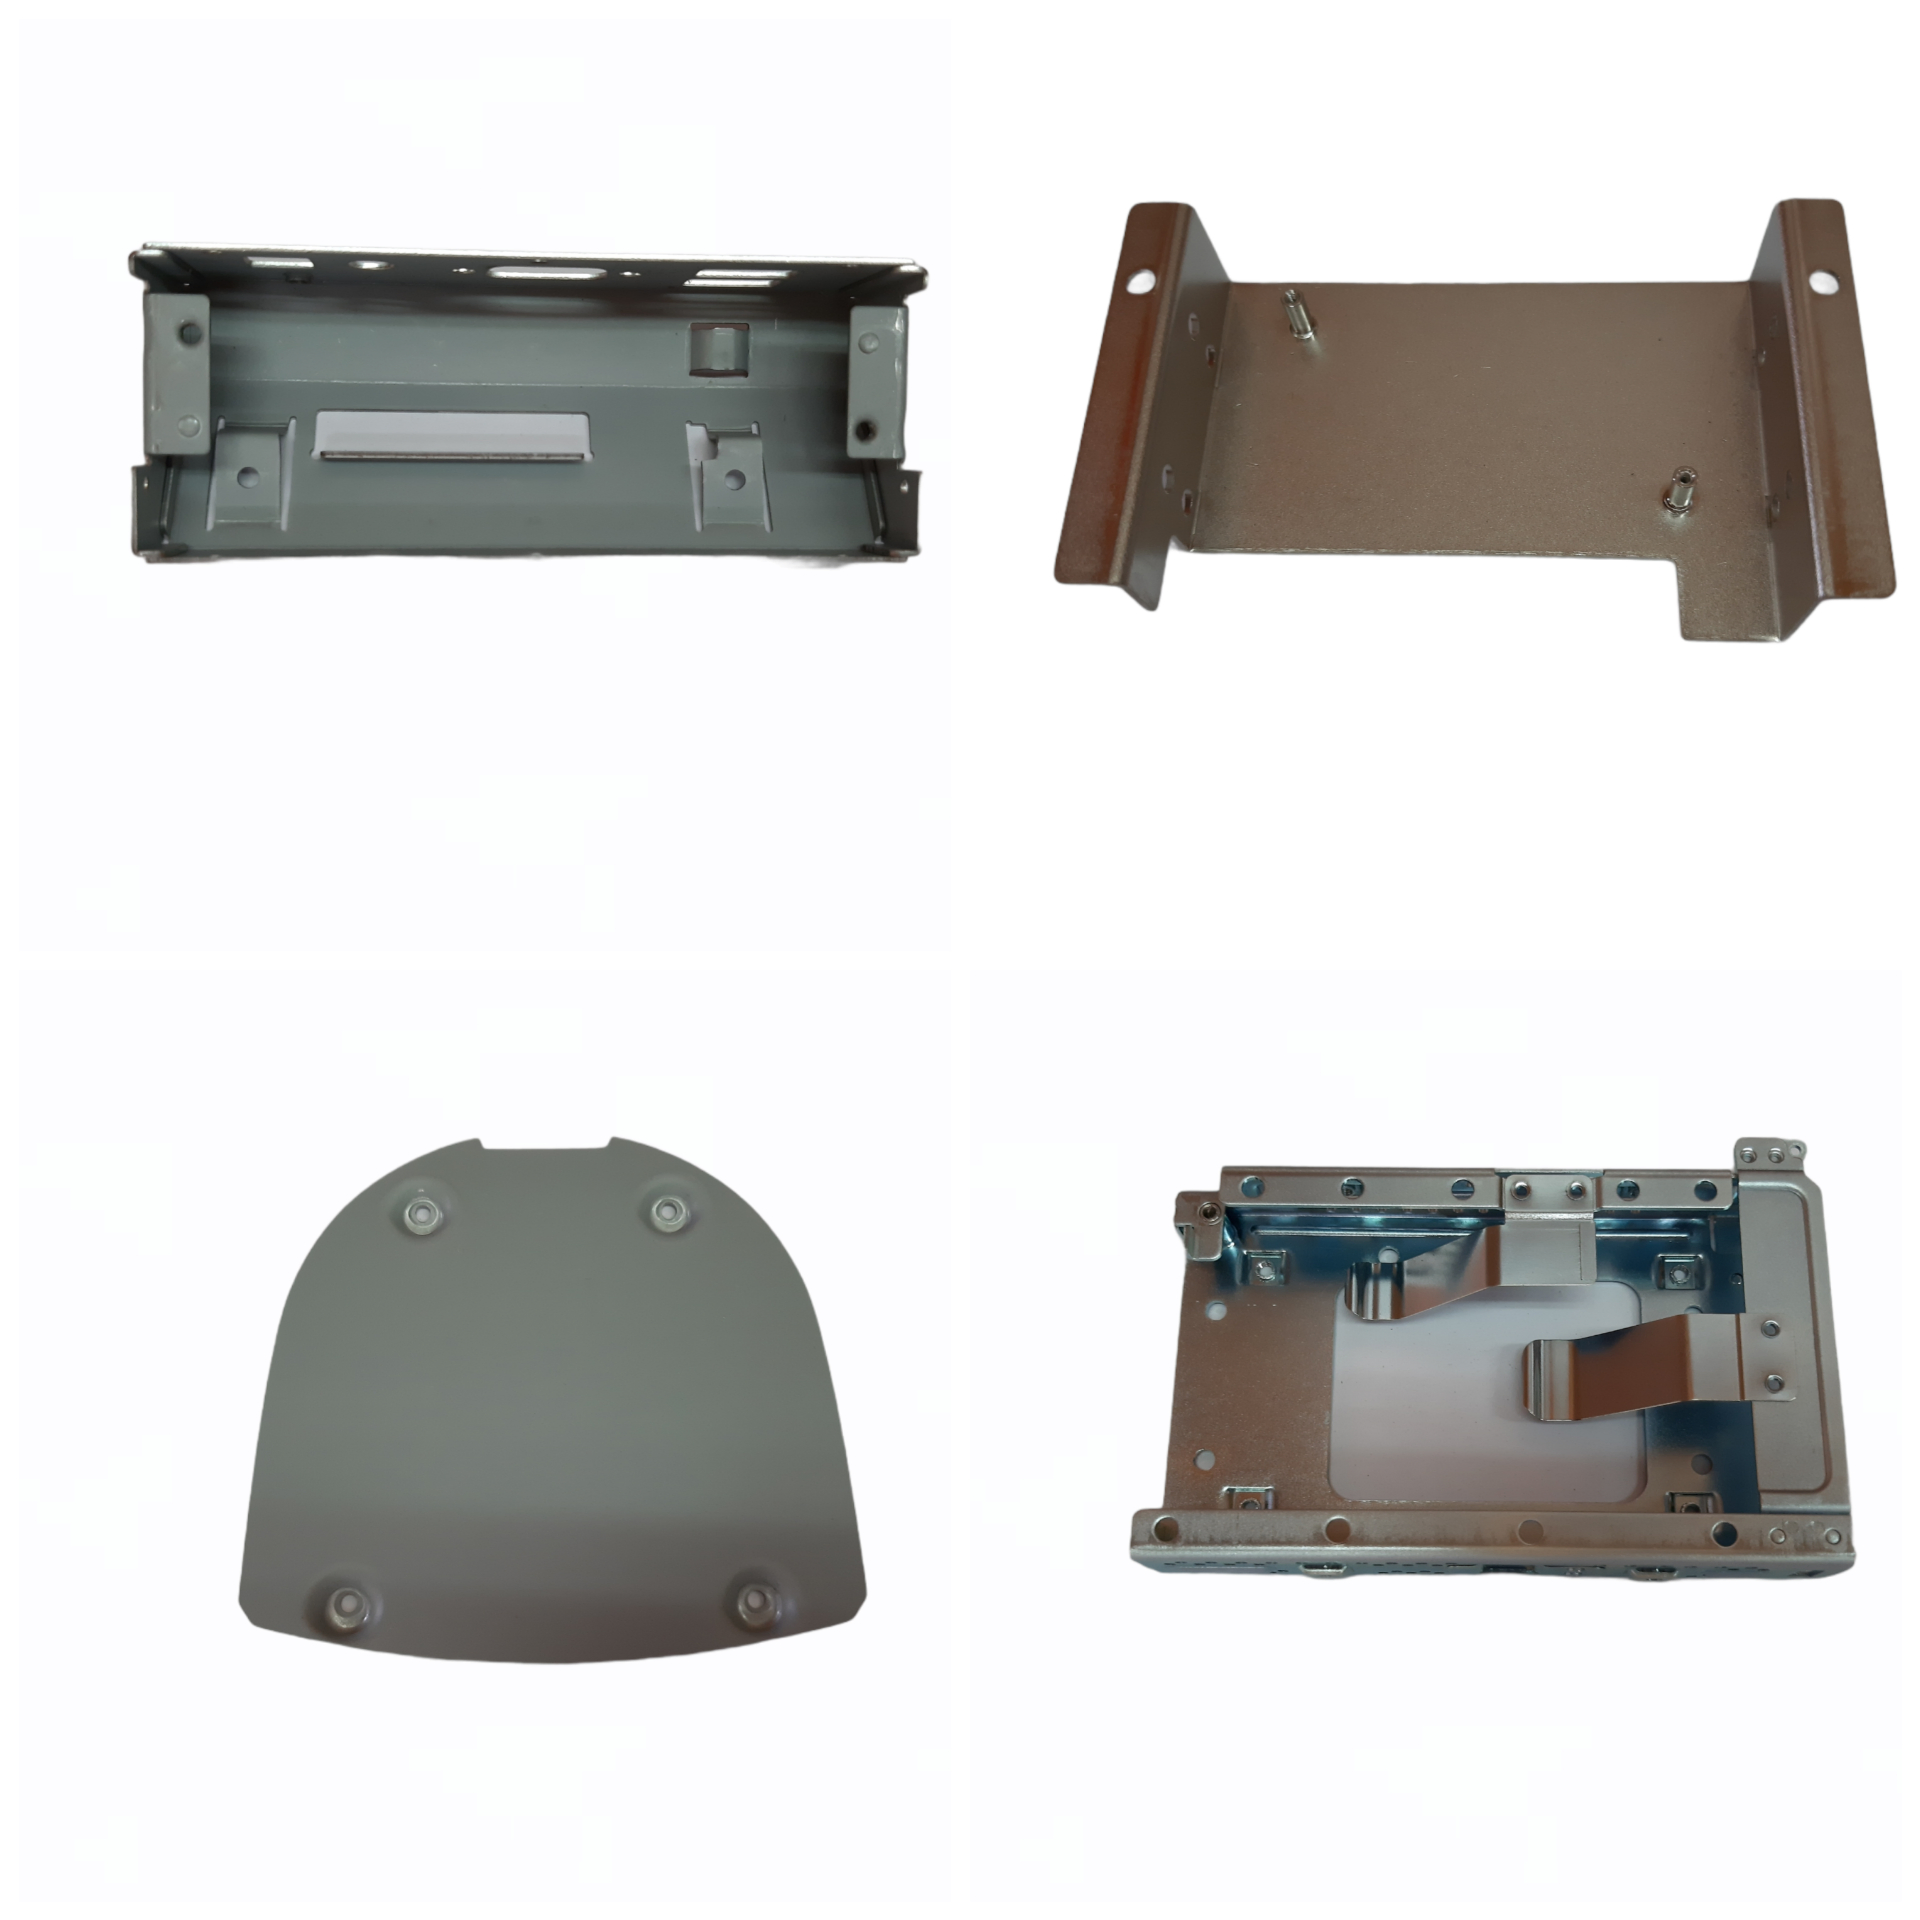 沖床、沖壓、鐵鋁銅製作、五金、隔離罩、配重鐵片